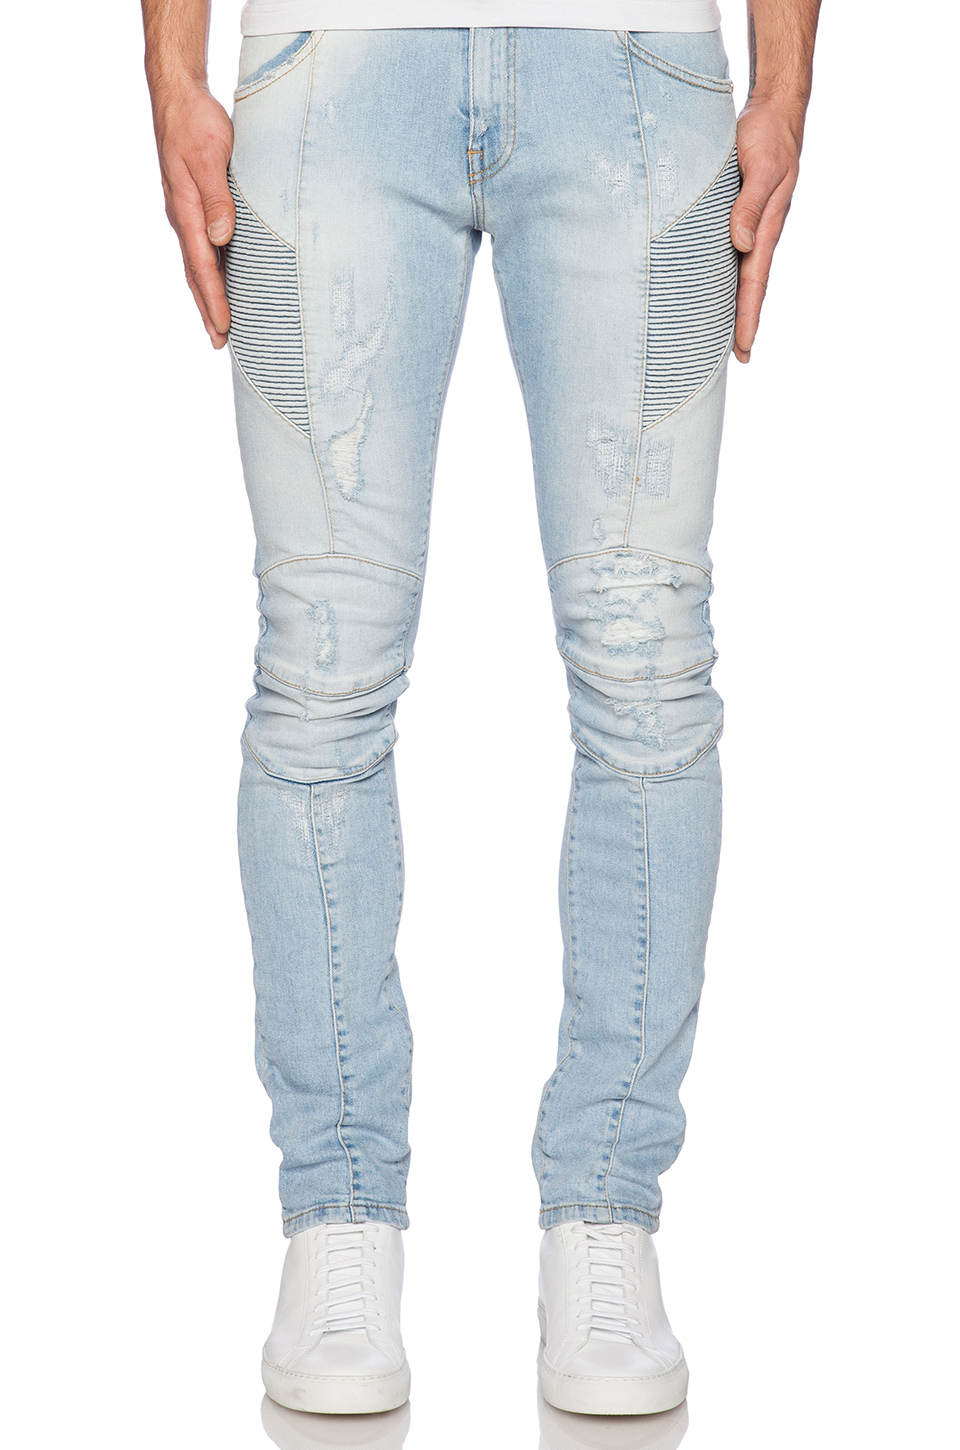 Lyst - Balmain Jeans in Blue for Men